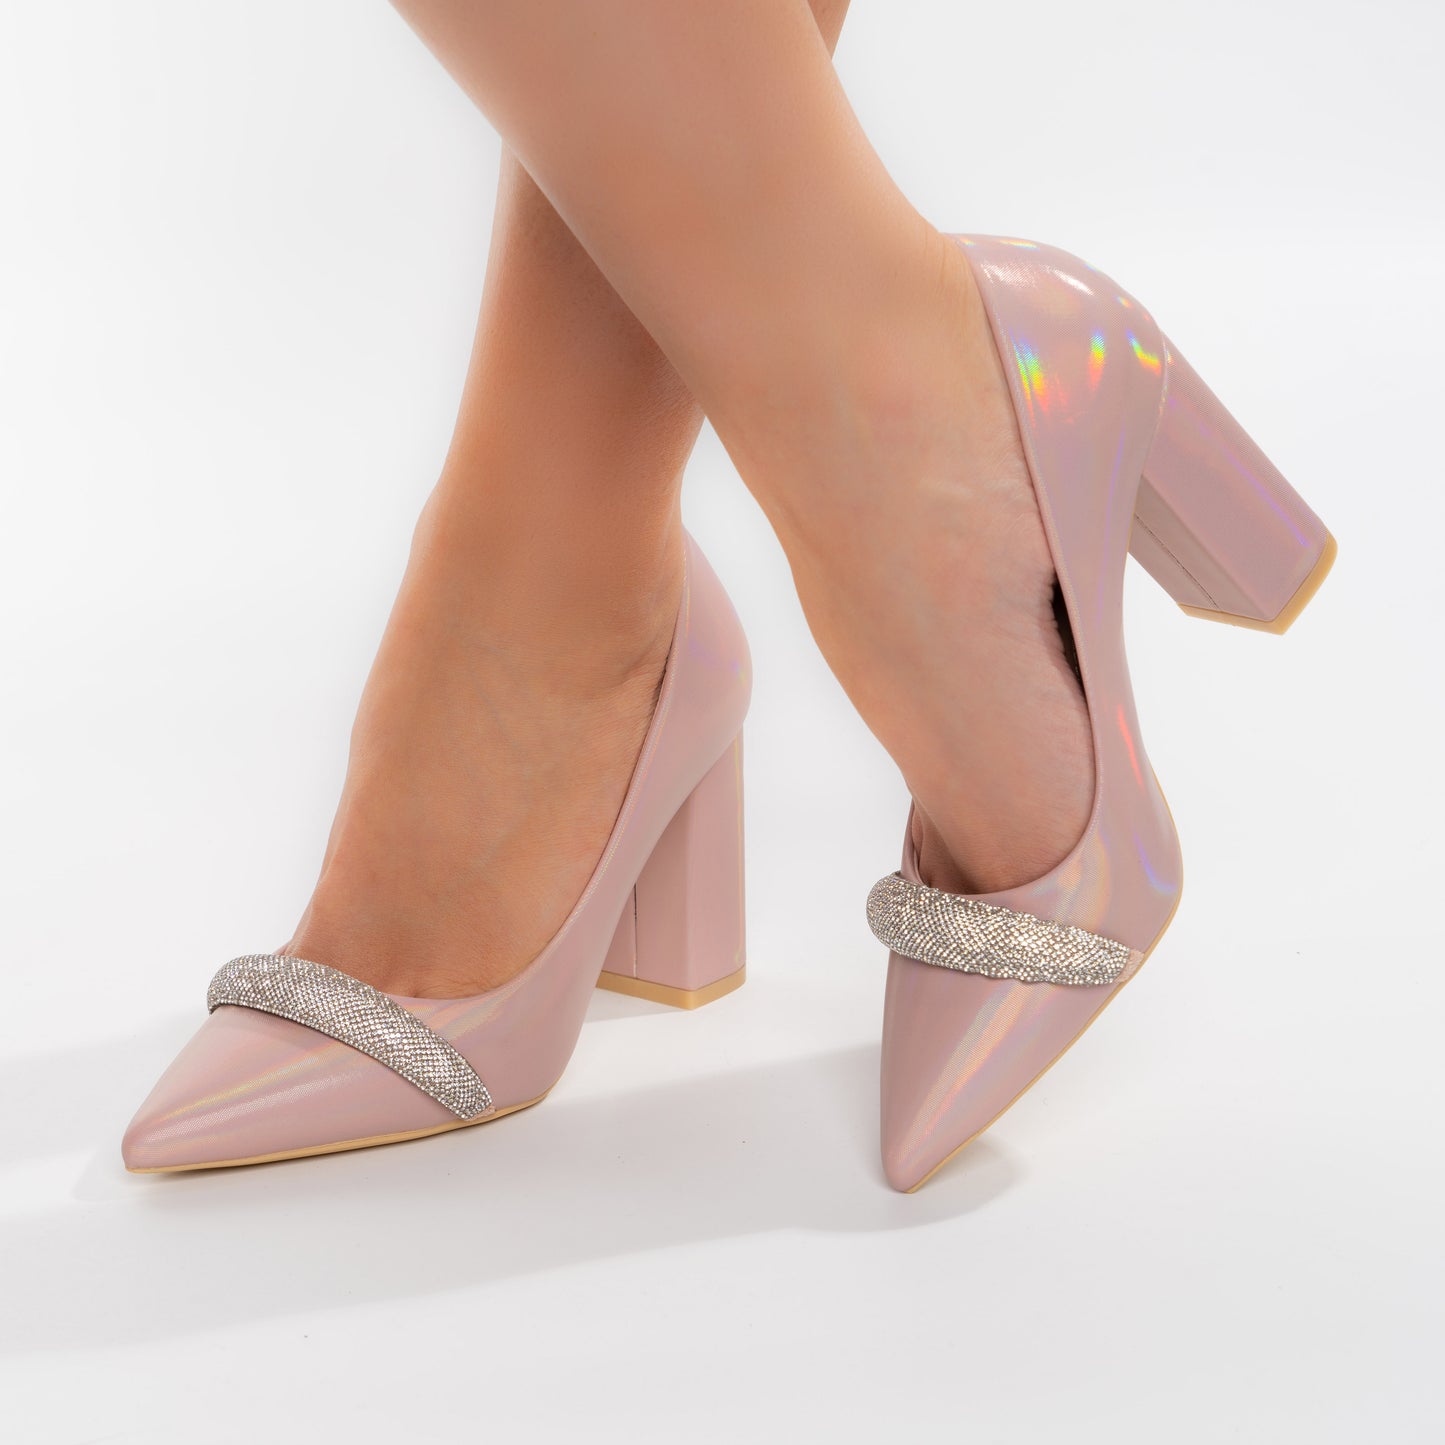 Pantofi Eleganti Cu Toc Gros 9cm Si Bareta Decorativa - Esra